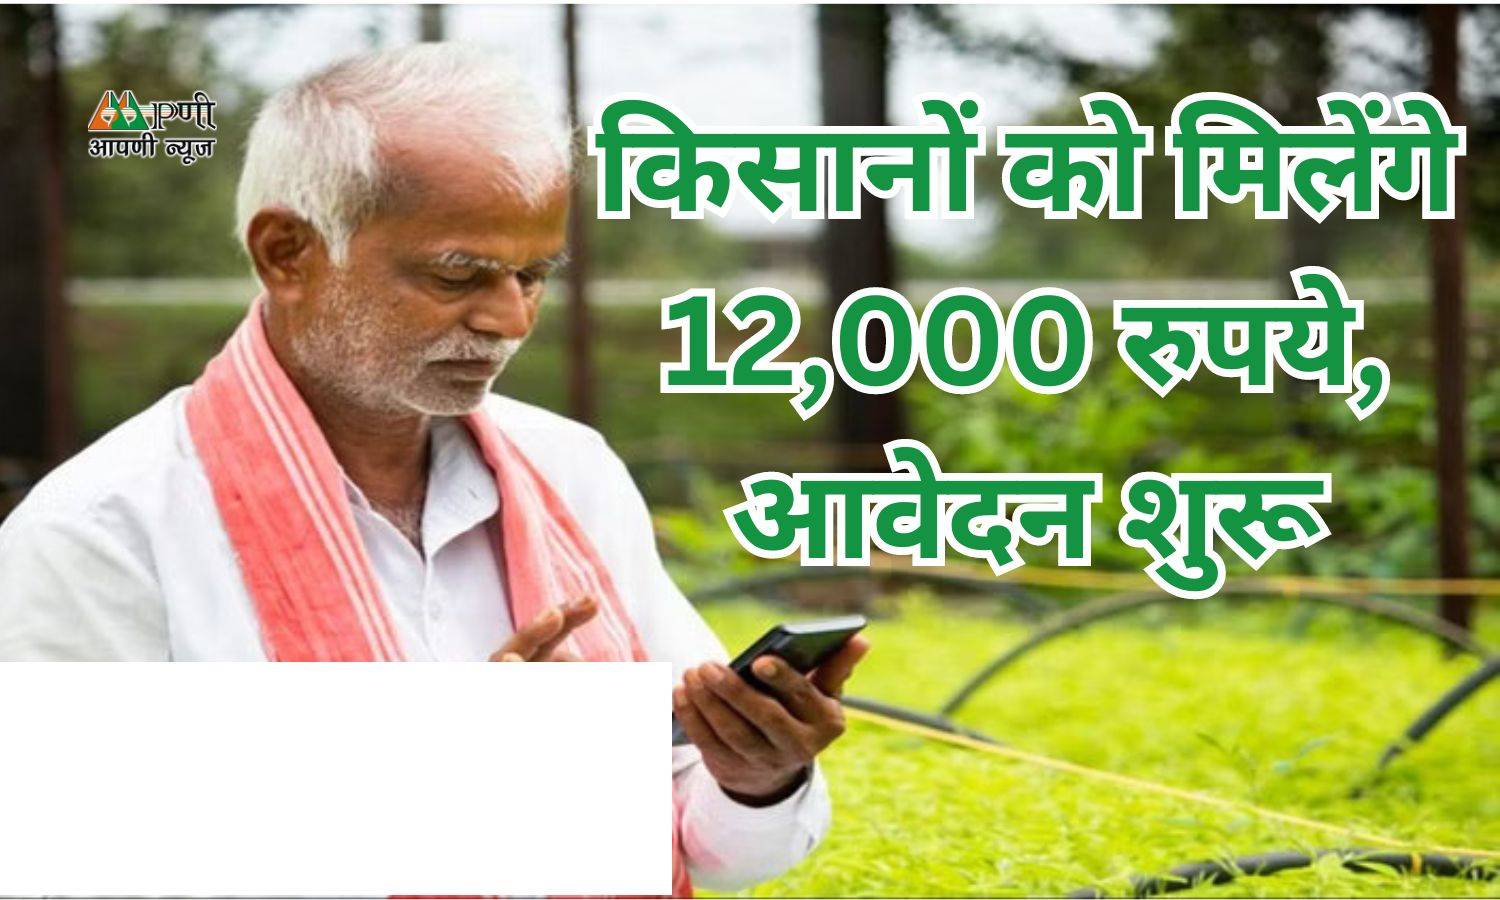 PM Kisan Yojana: किसानों को मिलेंगे 12,000 रुपये, आवेदन शुरू